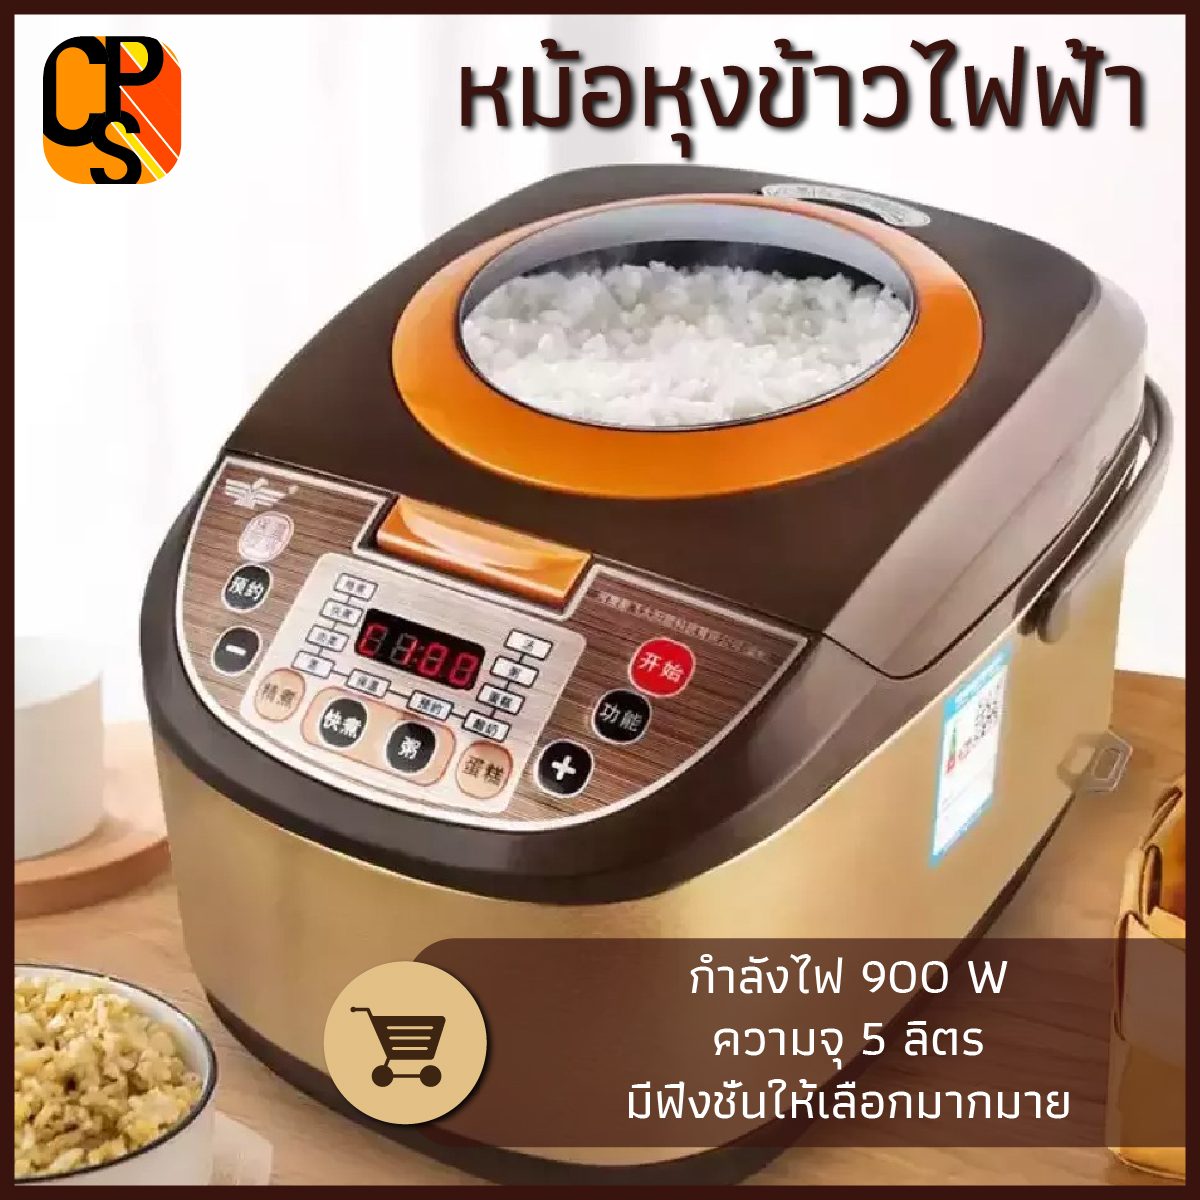 หม้อหุงข้าว หม้อหุงข้าวดิจิตอล 5 ลิตร หม้อหุงข้าวไฟฟ้า มีระบบอุ่นทิพย์ ตัวหม้อเคลือบอย่างดีไม่ติดก้นหม้อ Rice cooker Smart 5 liter CPS11